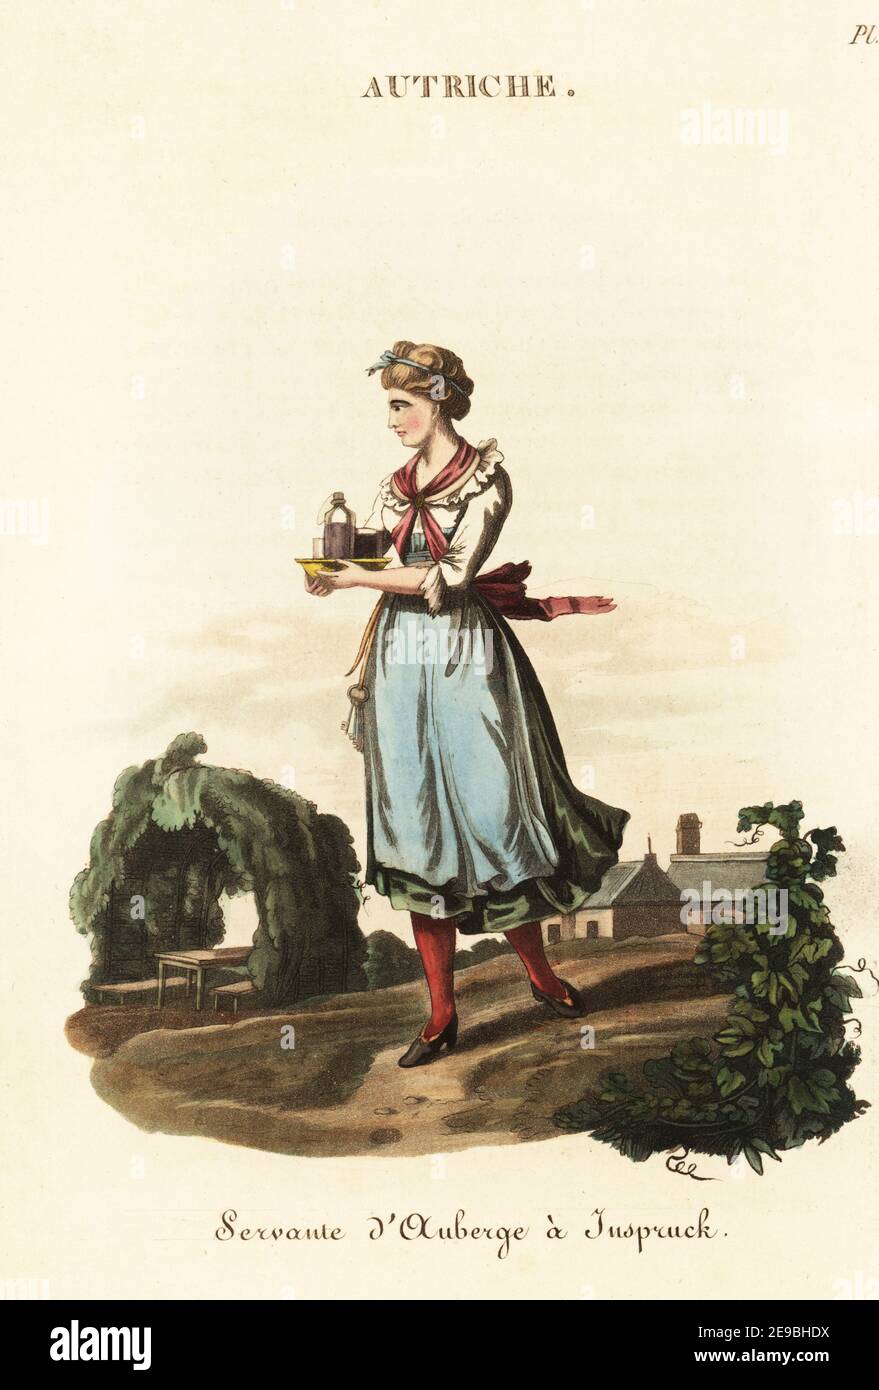 Cameriera austriaca in una locanda di Innsbruck, Tirolo, 18 ° secolo. Indossa un fazzoletto rosa, un bodice bianco, un peticoat verde, un grembiule blu e i suoi capelli sono legati da bande. Una Maid Servant di una locanda a Inspruck, Servante d'auberge a Insbruck. Incisione a mano su copperplate dopo un'illustrazione di William Alexander da J-B. Eyries’ l’Autriche: Costumi, Moeurs et Usages des Autrichiens, Austria: Costumi, maniere e Mores degli Austriaci, Librairie de Gide Fils, Parigi, 1823. Jean-Baptiste Eyries (1767-1846) è stato un . Foto Stock